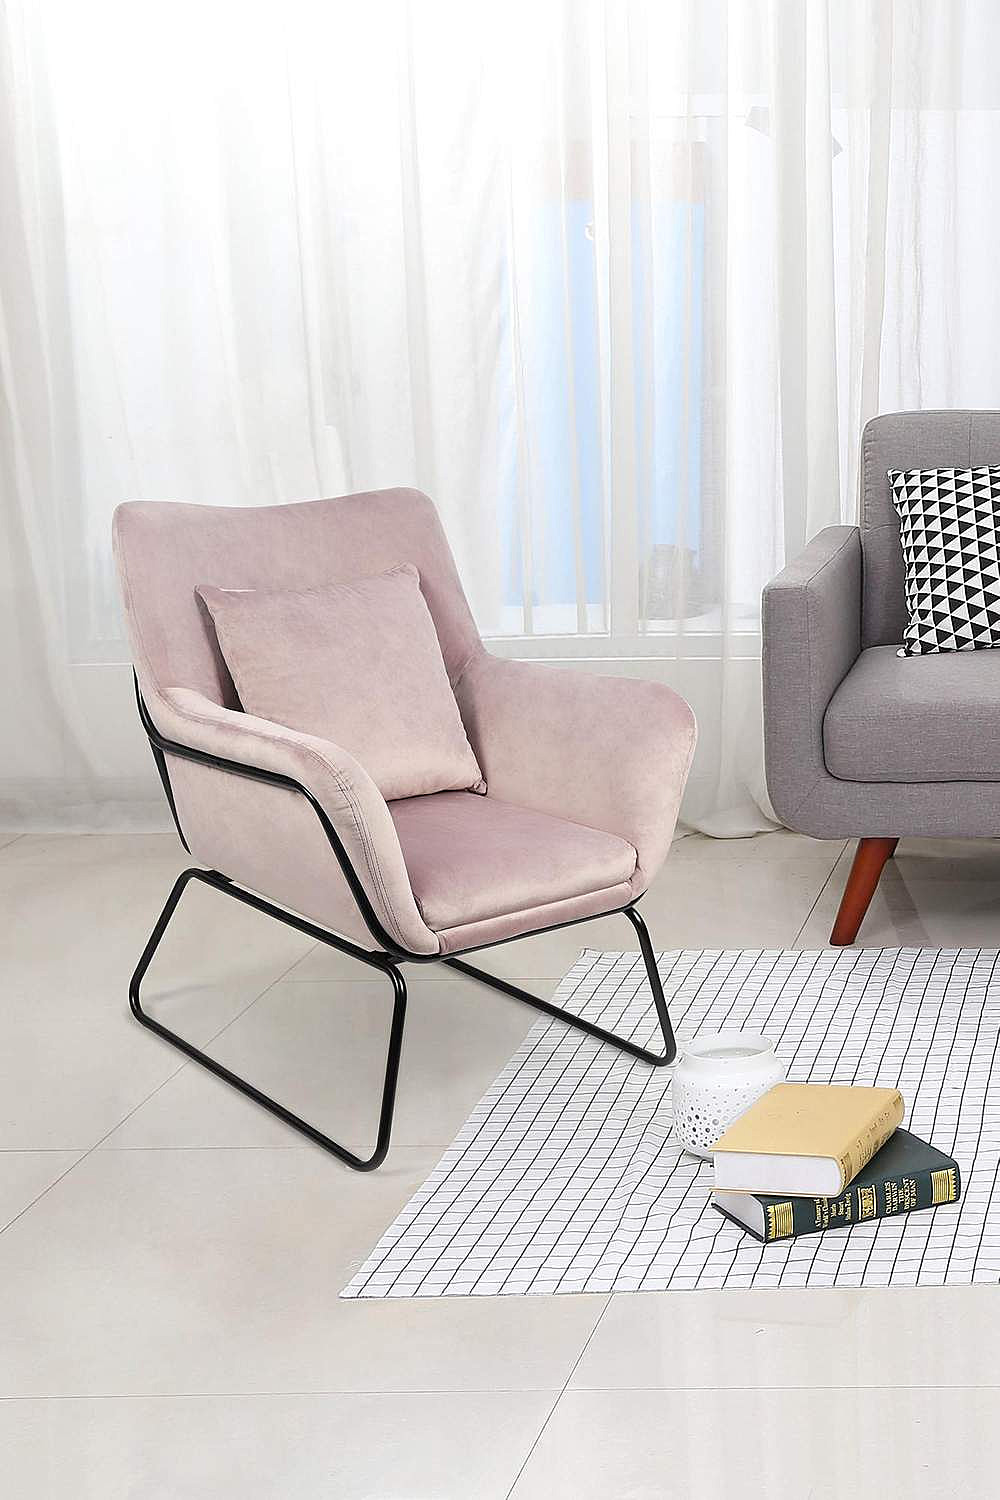 SalesFever Relaxsessel Sessel mit Samtbezug in verschiedenen Farben